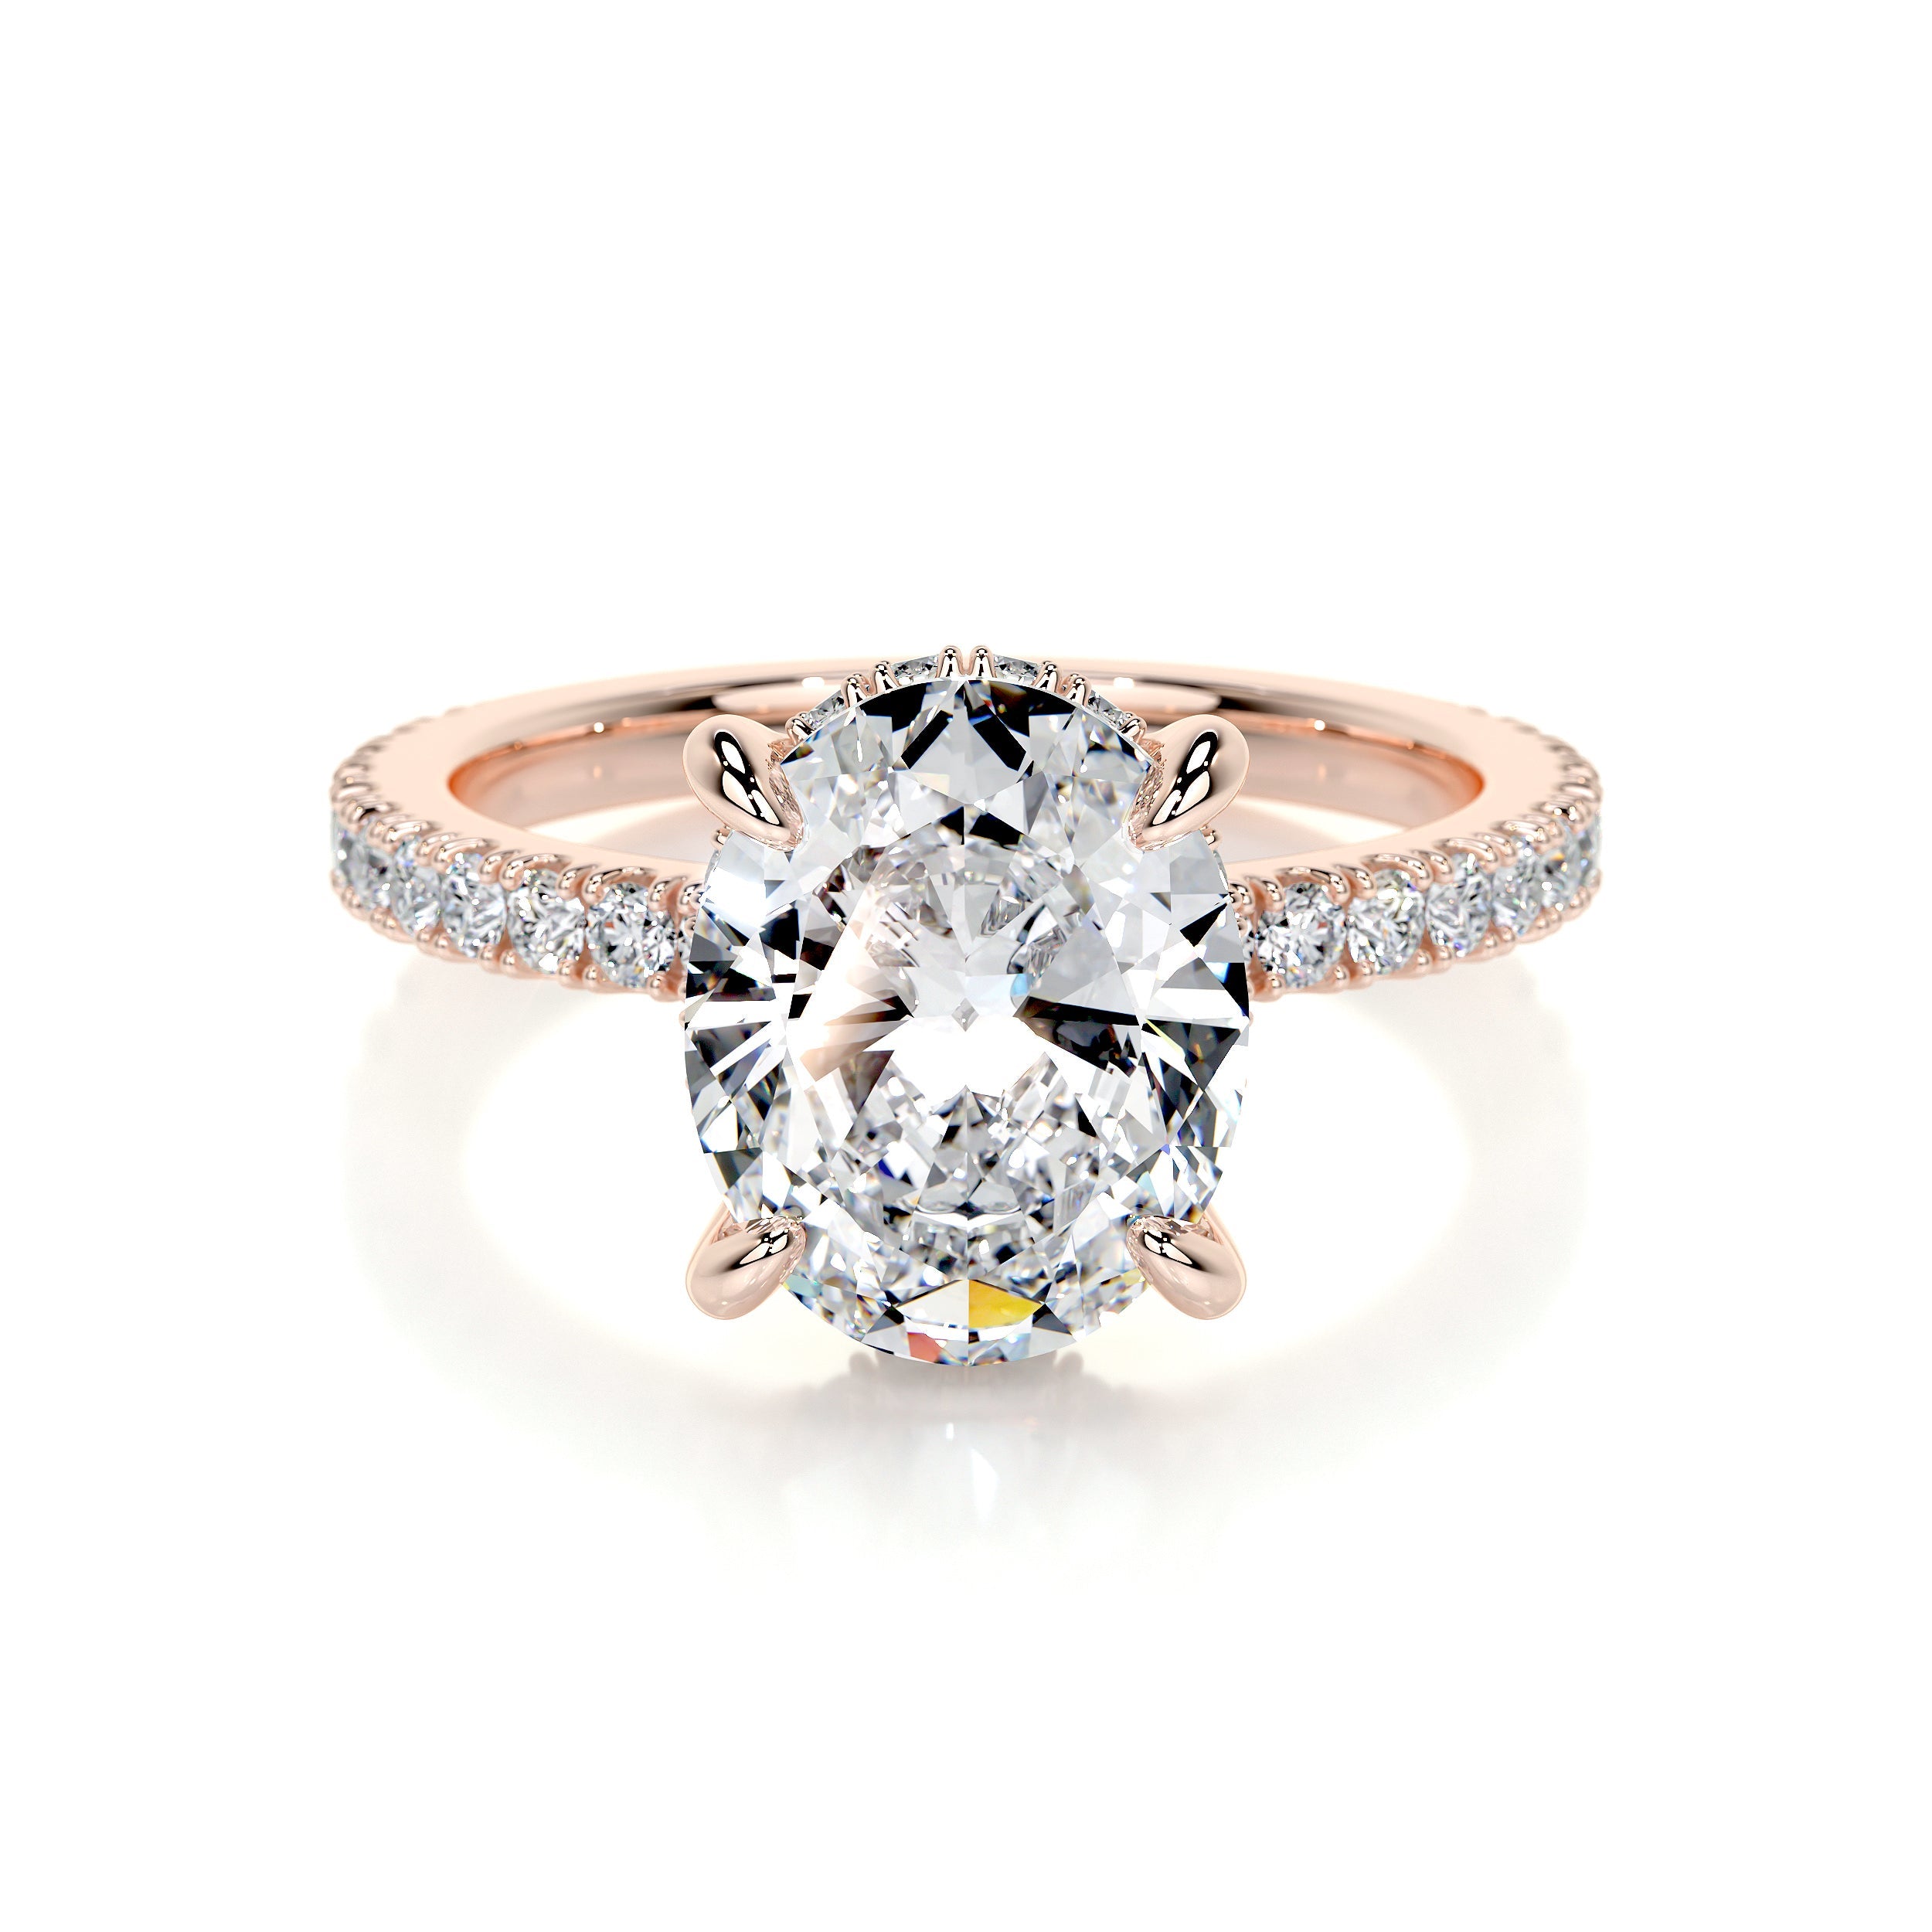 Lucy Lab Grown Diamond Ring   (2.5 Carat) -14K Rose Gold